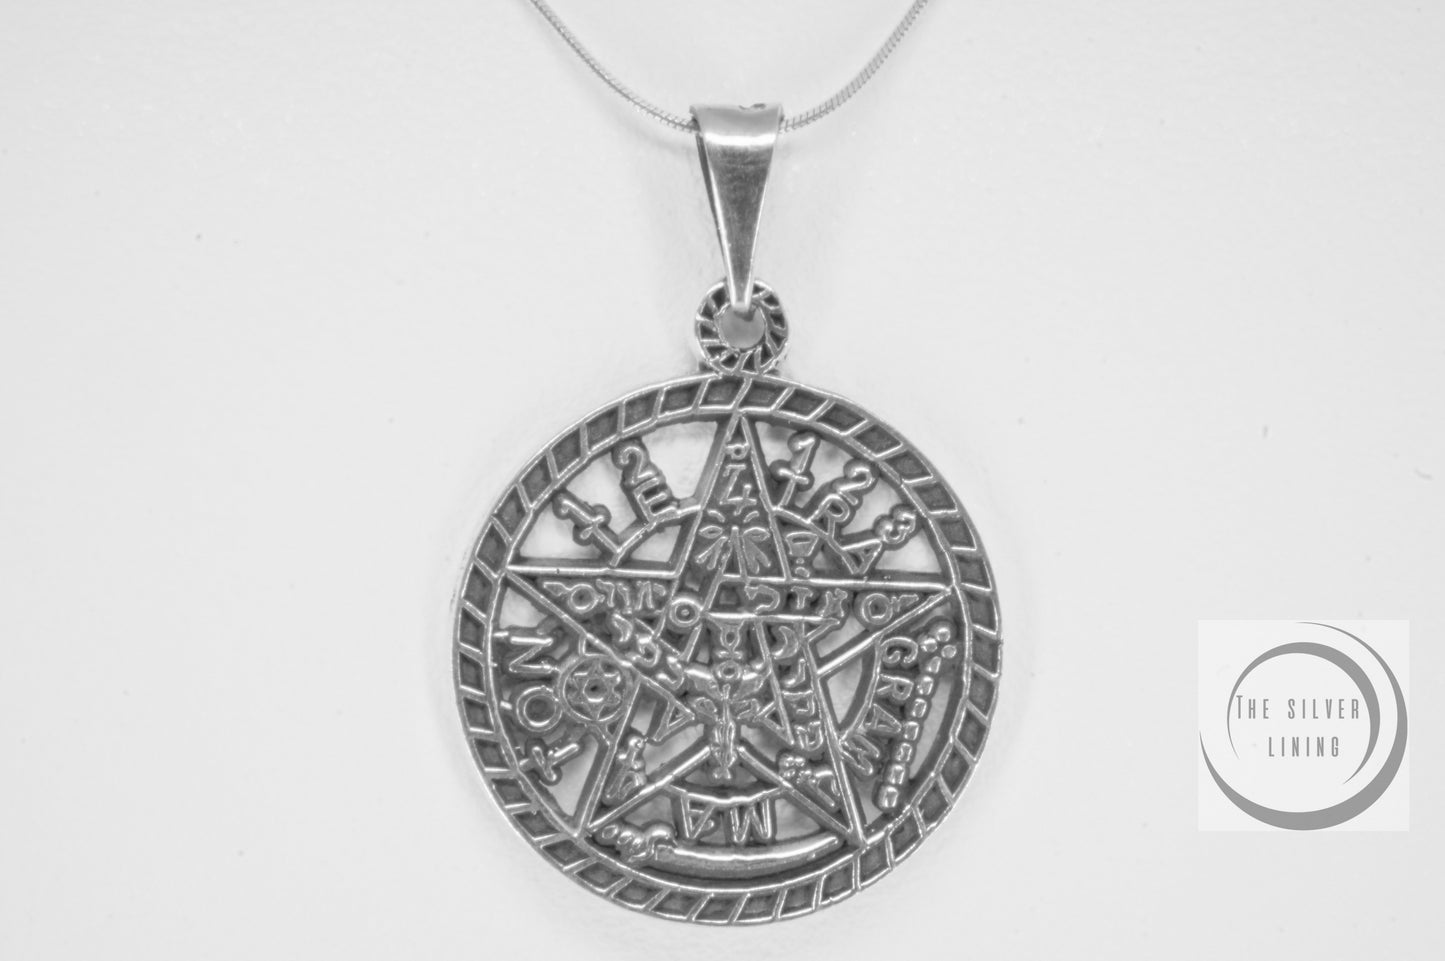 Dije de plata 925, Tetragramatron calado con cadena incluída